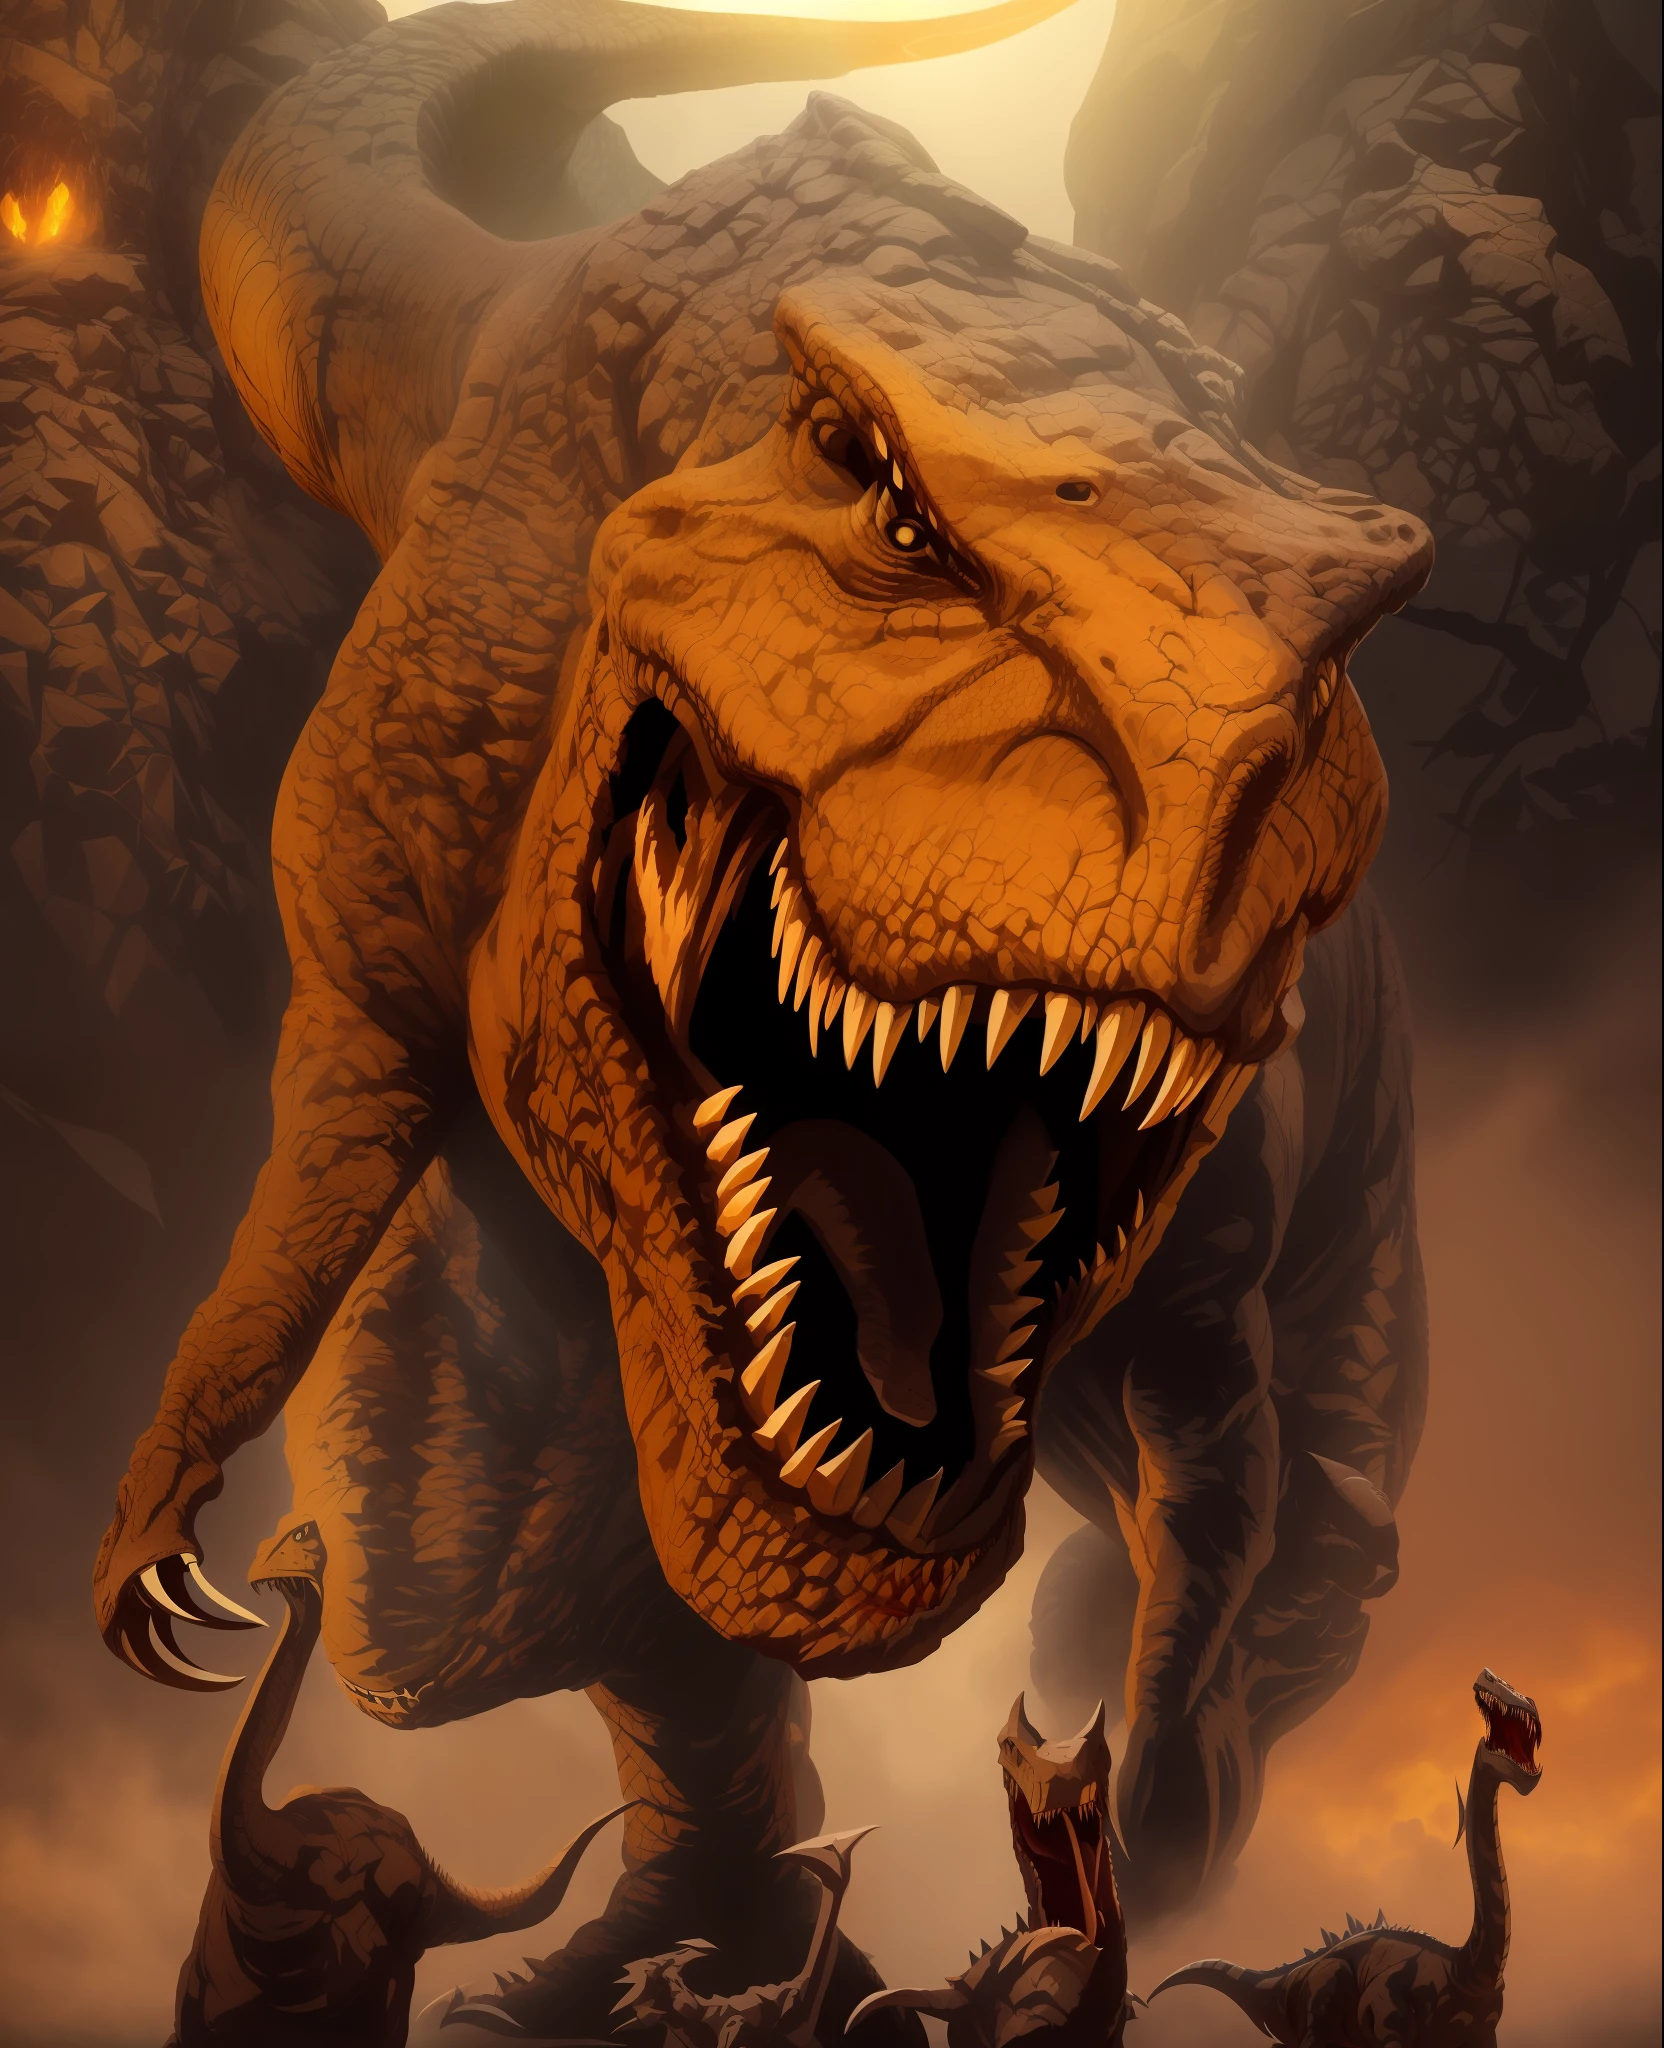 "Zeichne einen Tyrannosaurus Rex (T-Rex) realistisch mit offenem Mund, zeigt seine scharfen Zähne und Zunge. Die Haut des T-Rex sollte einen dunklen Farbton und eine Textur haben, mit realistischen Schatten und Details. Die Szene sollte filmisch ausgeleuchtet werden, mit einem weichen bernsteinfarbenen Licht, das von oben und links vom Bild kommt, Wirft subtile Schatten und hebt die Konturen des T-Rex hervor. Das Bild sollte ein Gefühl von Präsenz und Kraft vermitteln, mit dem T-Rex kurz vor dem Angriff."